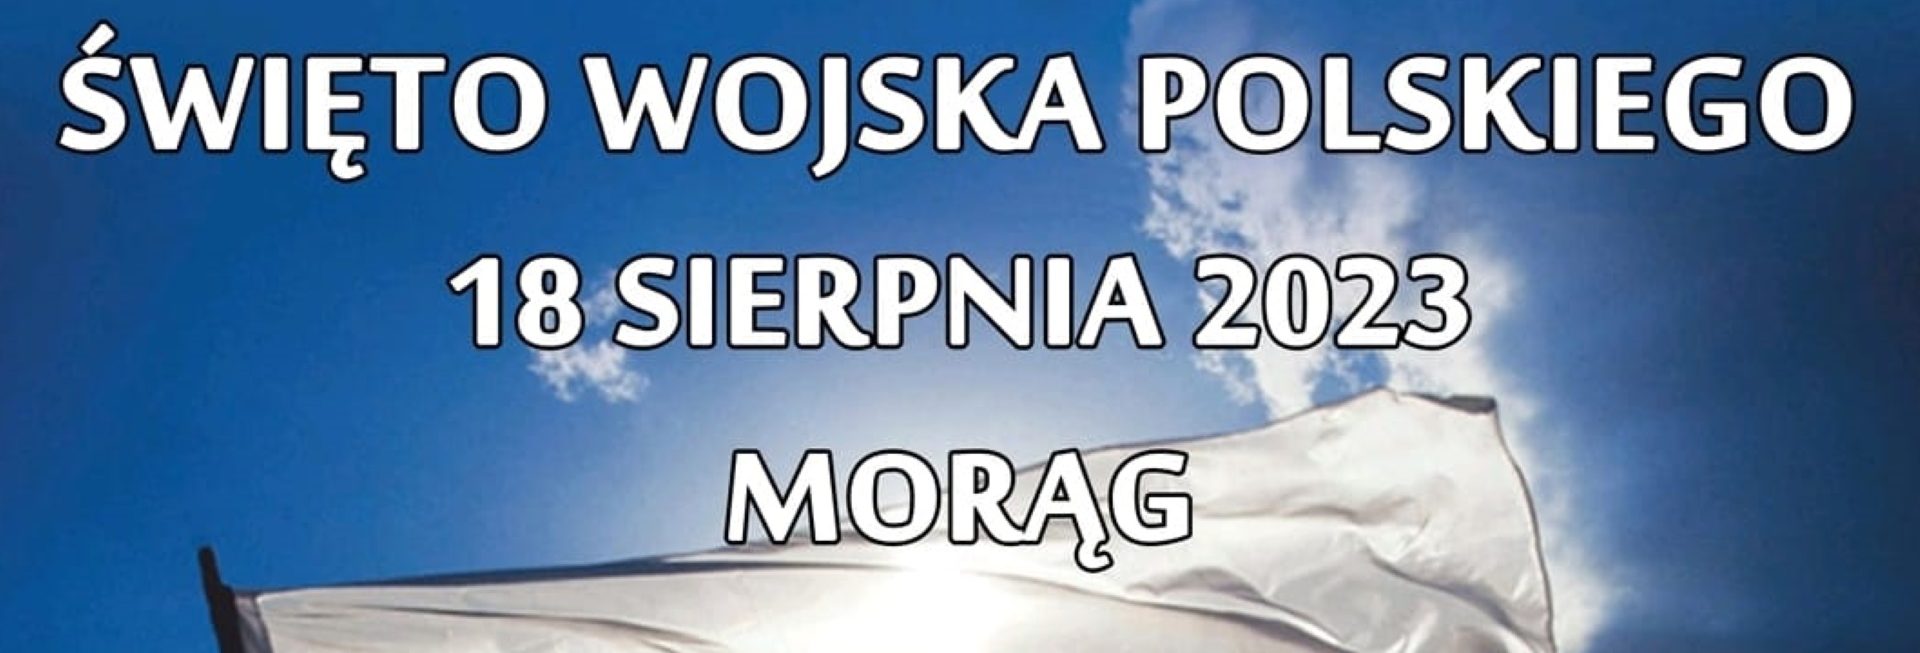 Plakat zapraszający w piątek 18 sierpnia 2023 r. do Morąga na Piknik Militarny z okazji Święta Wojska Polskiego Morąg 2023.